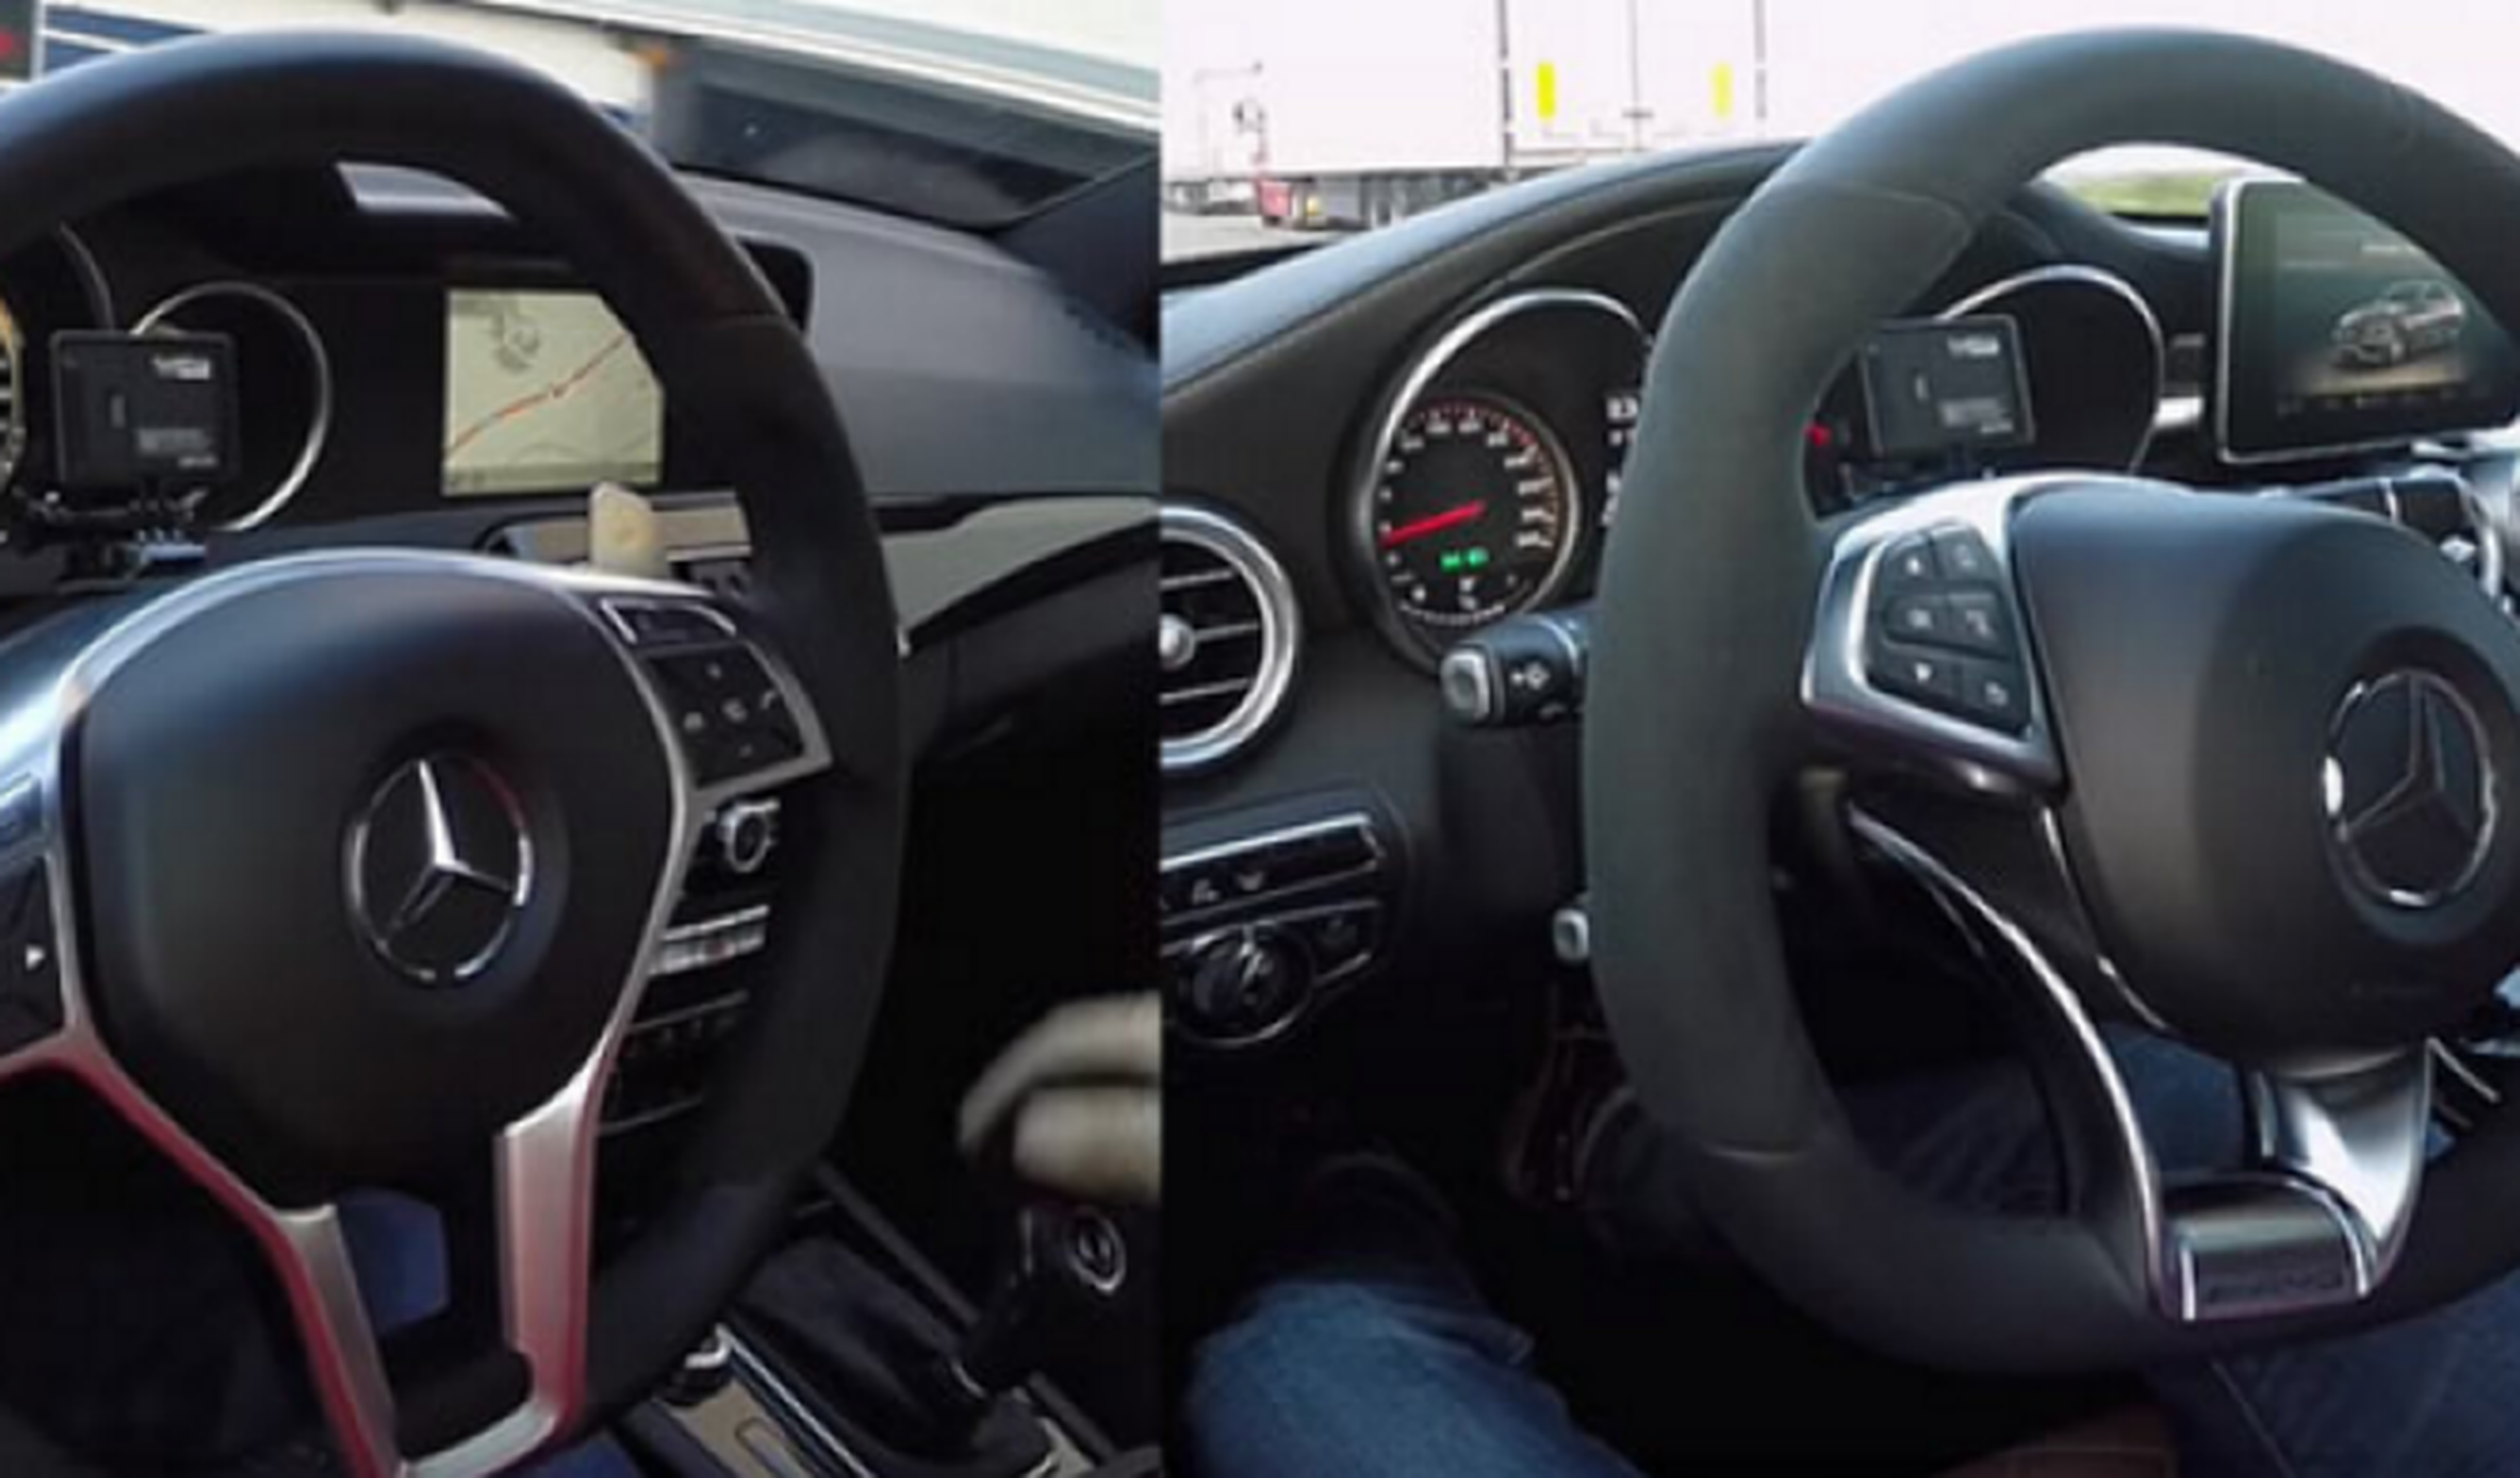 Vídeo: sonido del Mercedes C63 AMG atmosférico vs turbo